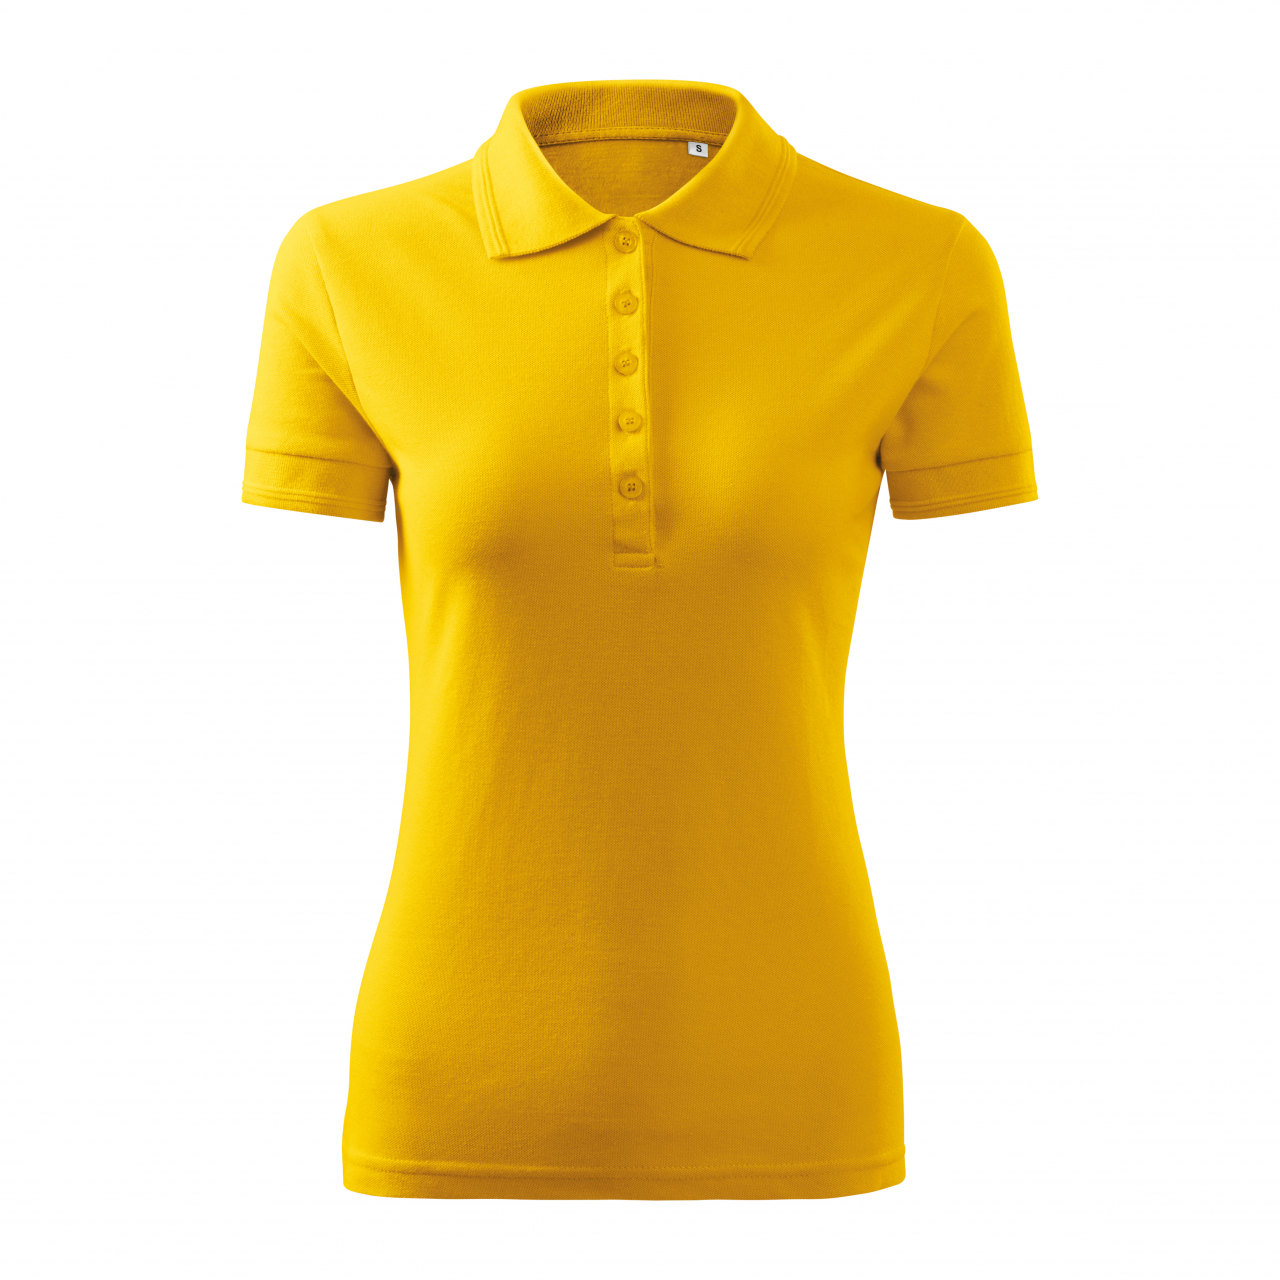 Polokošile dámská Malfini Pique Polo Free - žlutá, XL